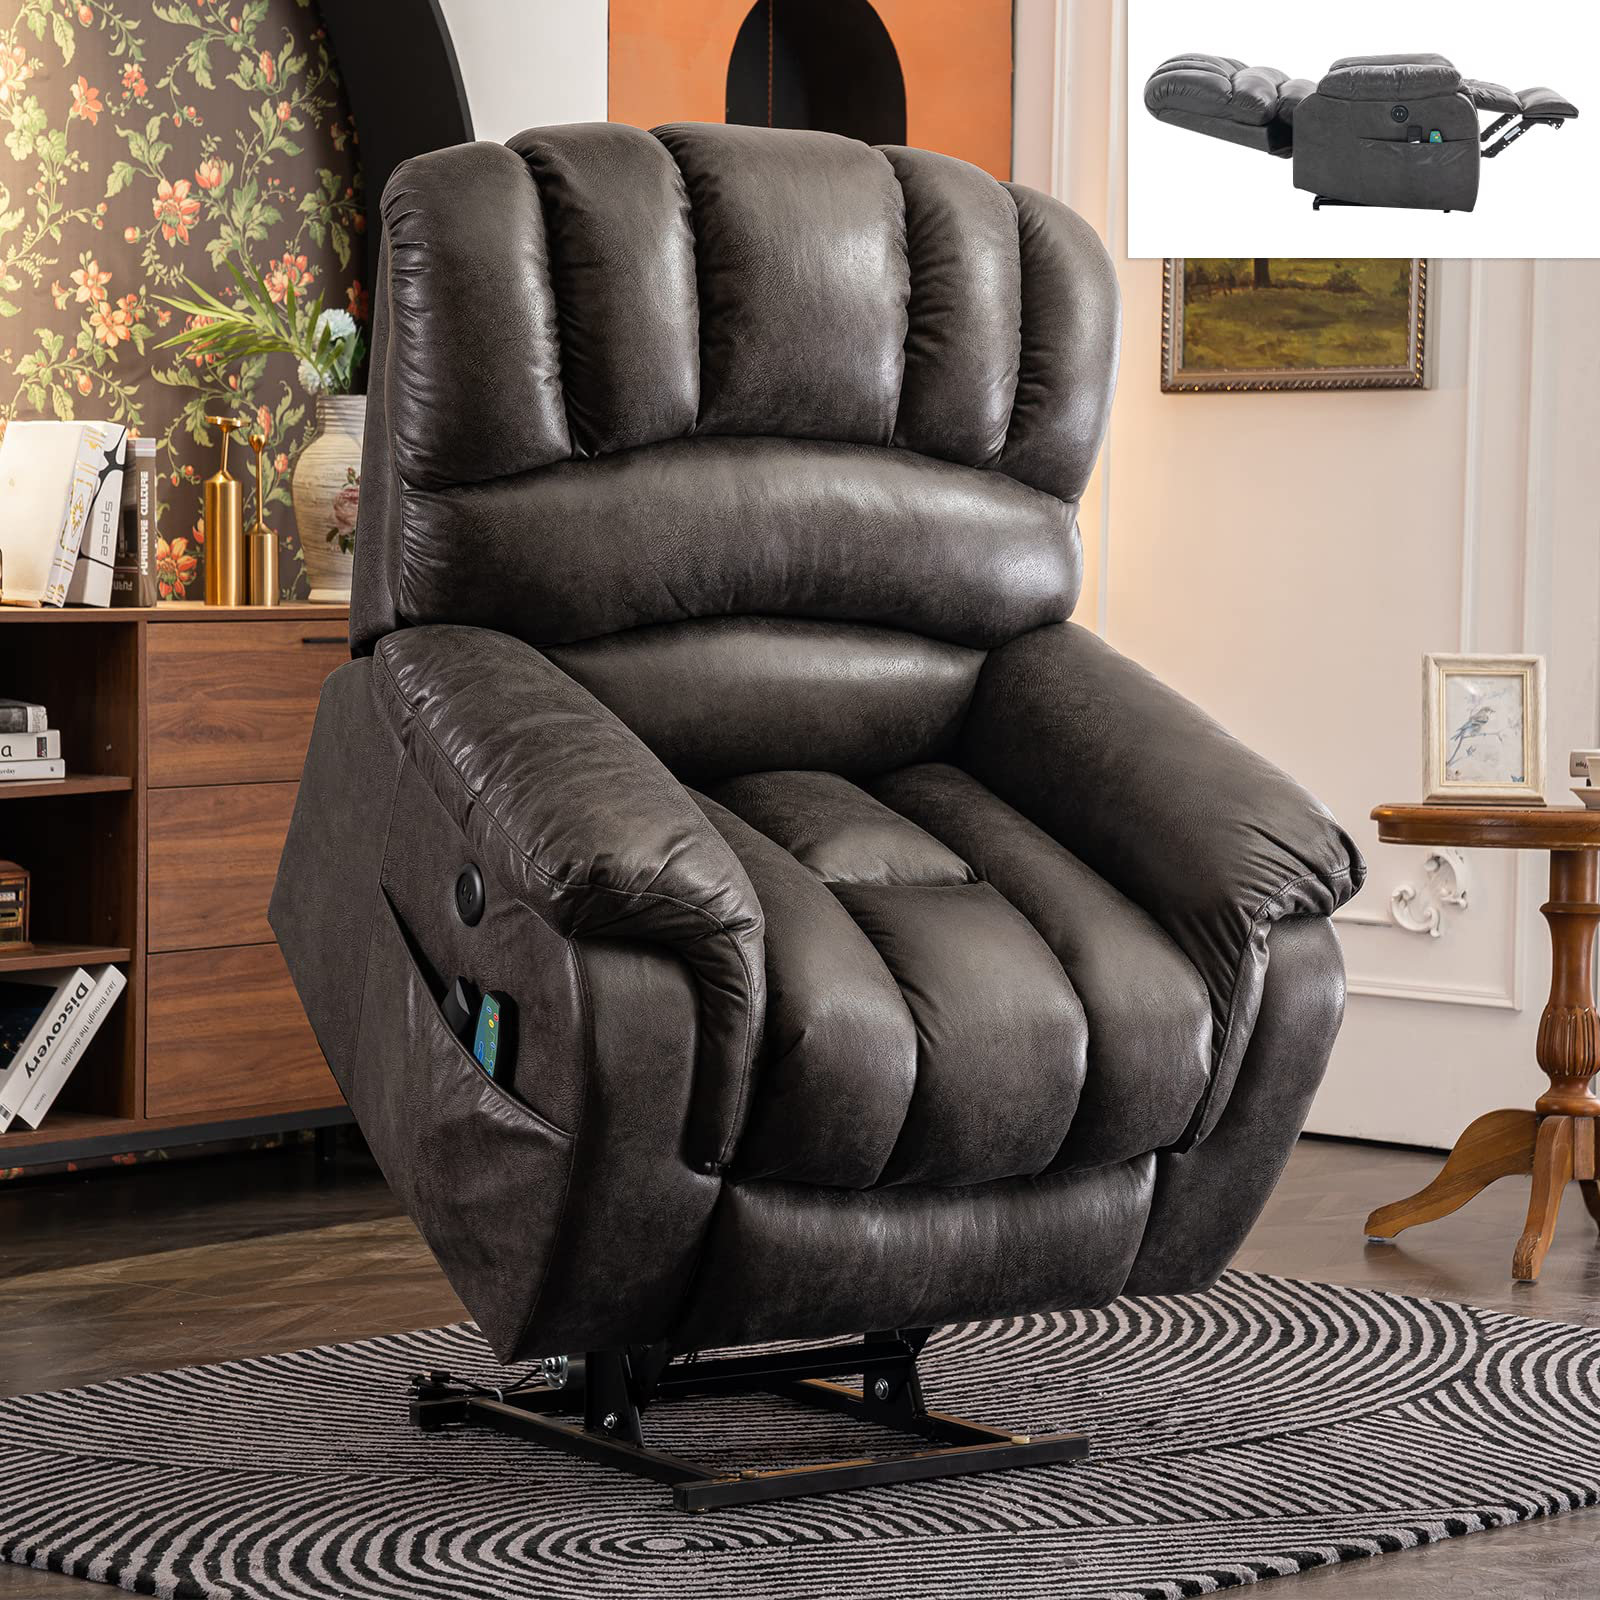 https://assets.wfcdn.com/im/97317976/compr-r85/2390/239060516/hawking-power-reclining-heated-massage-chair.jpg